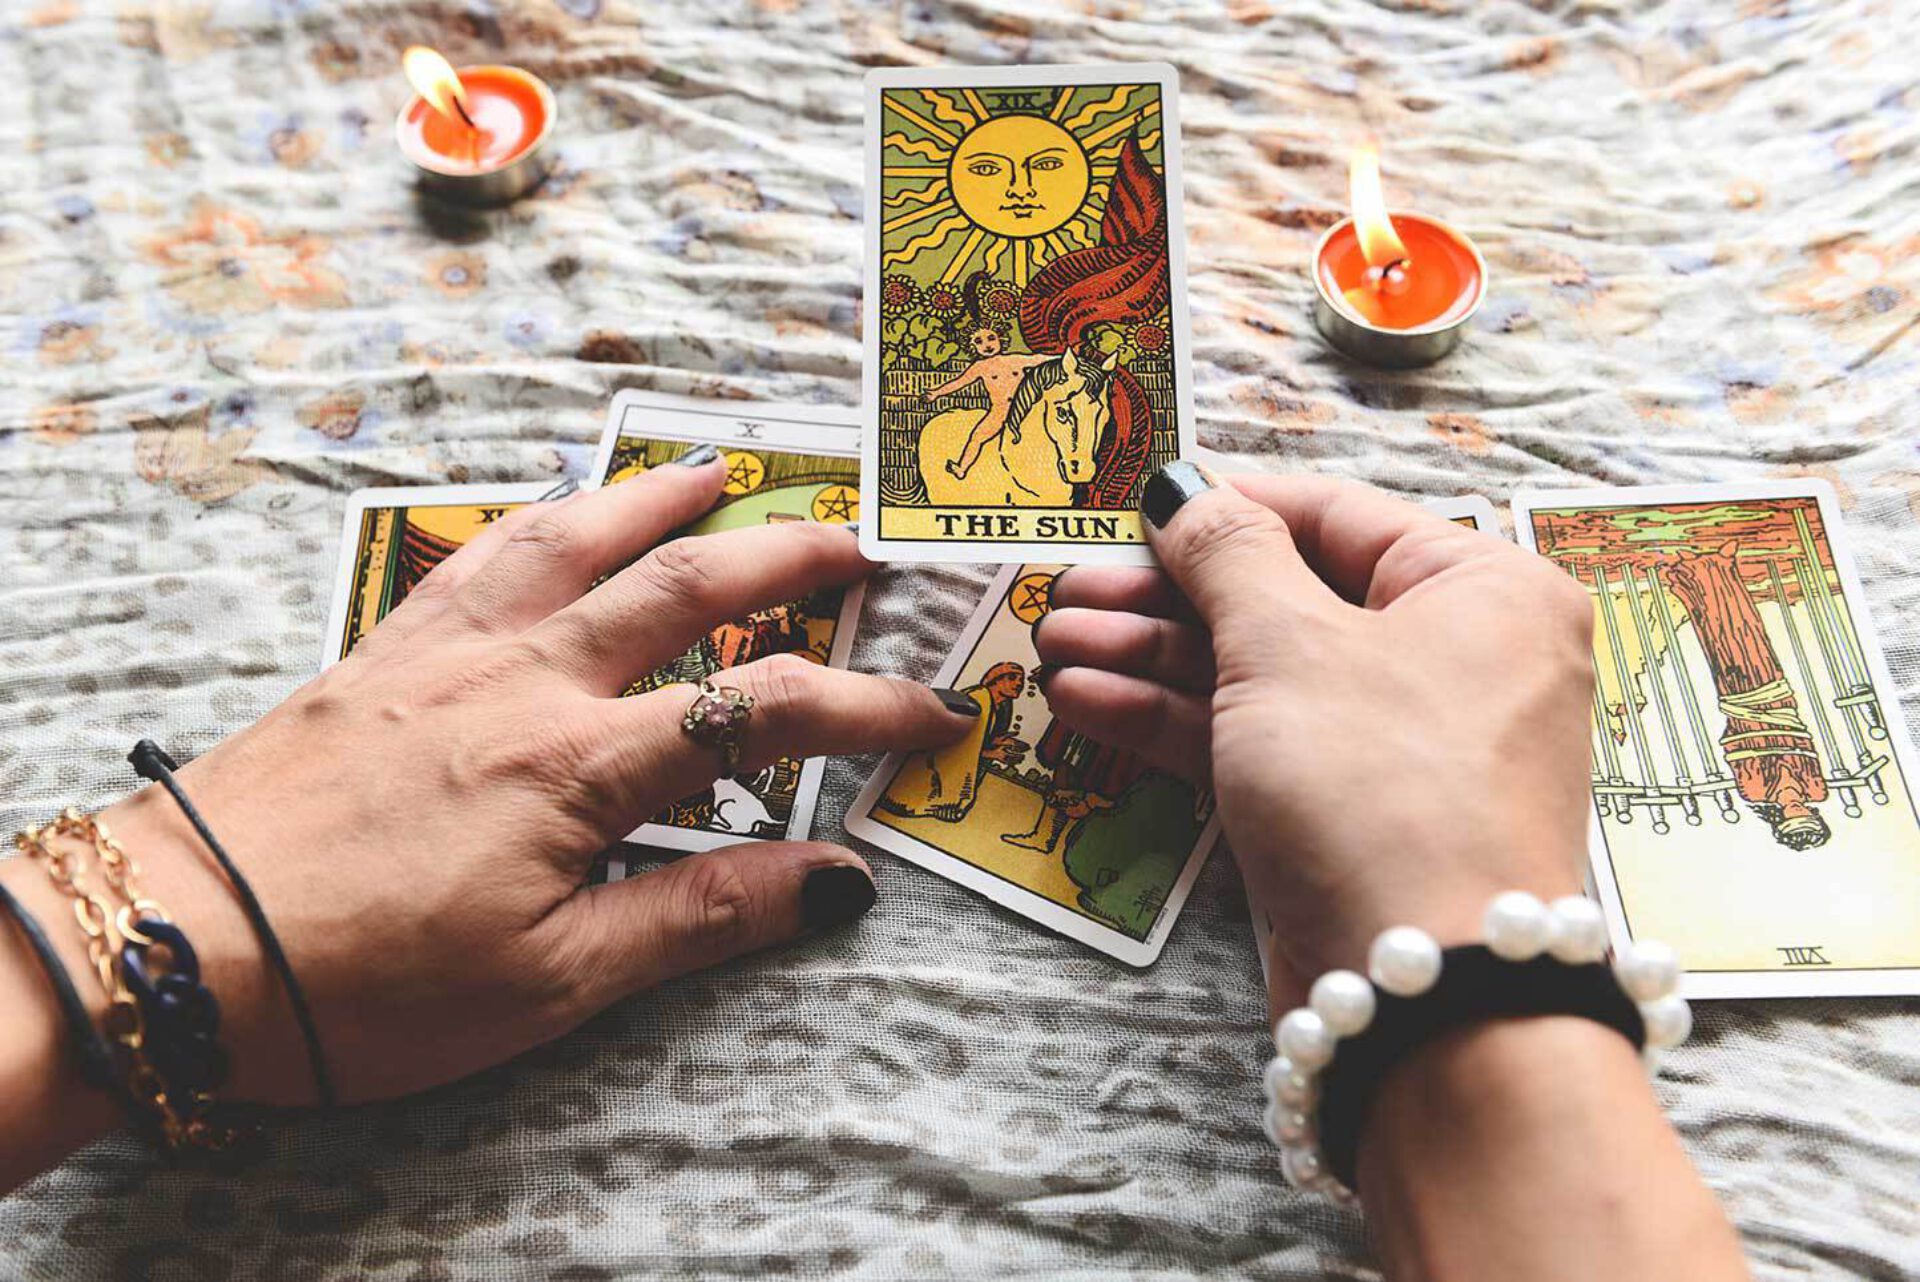 De perfecte tarot reading: 5 manieren om je tarotkaarten te reinigen